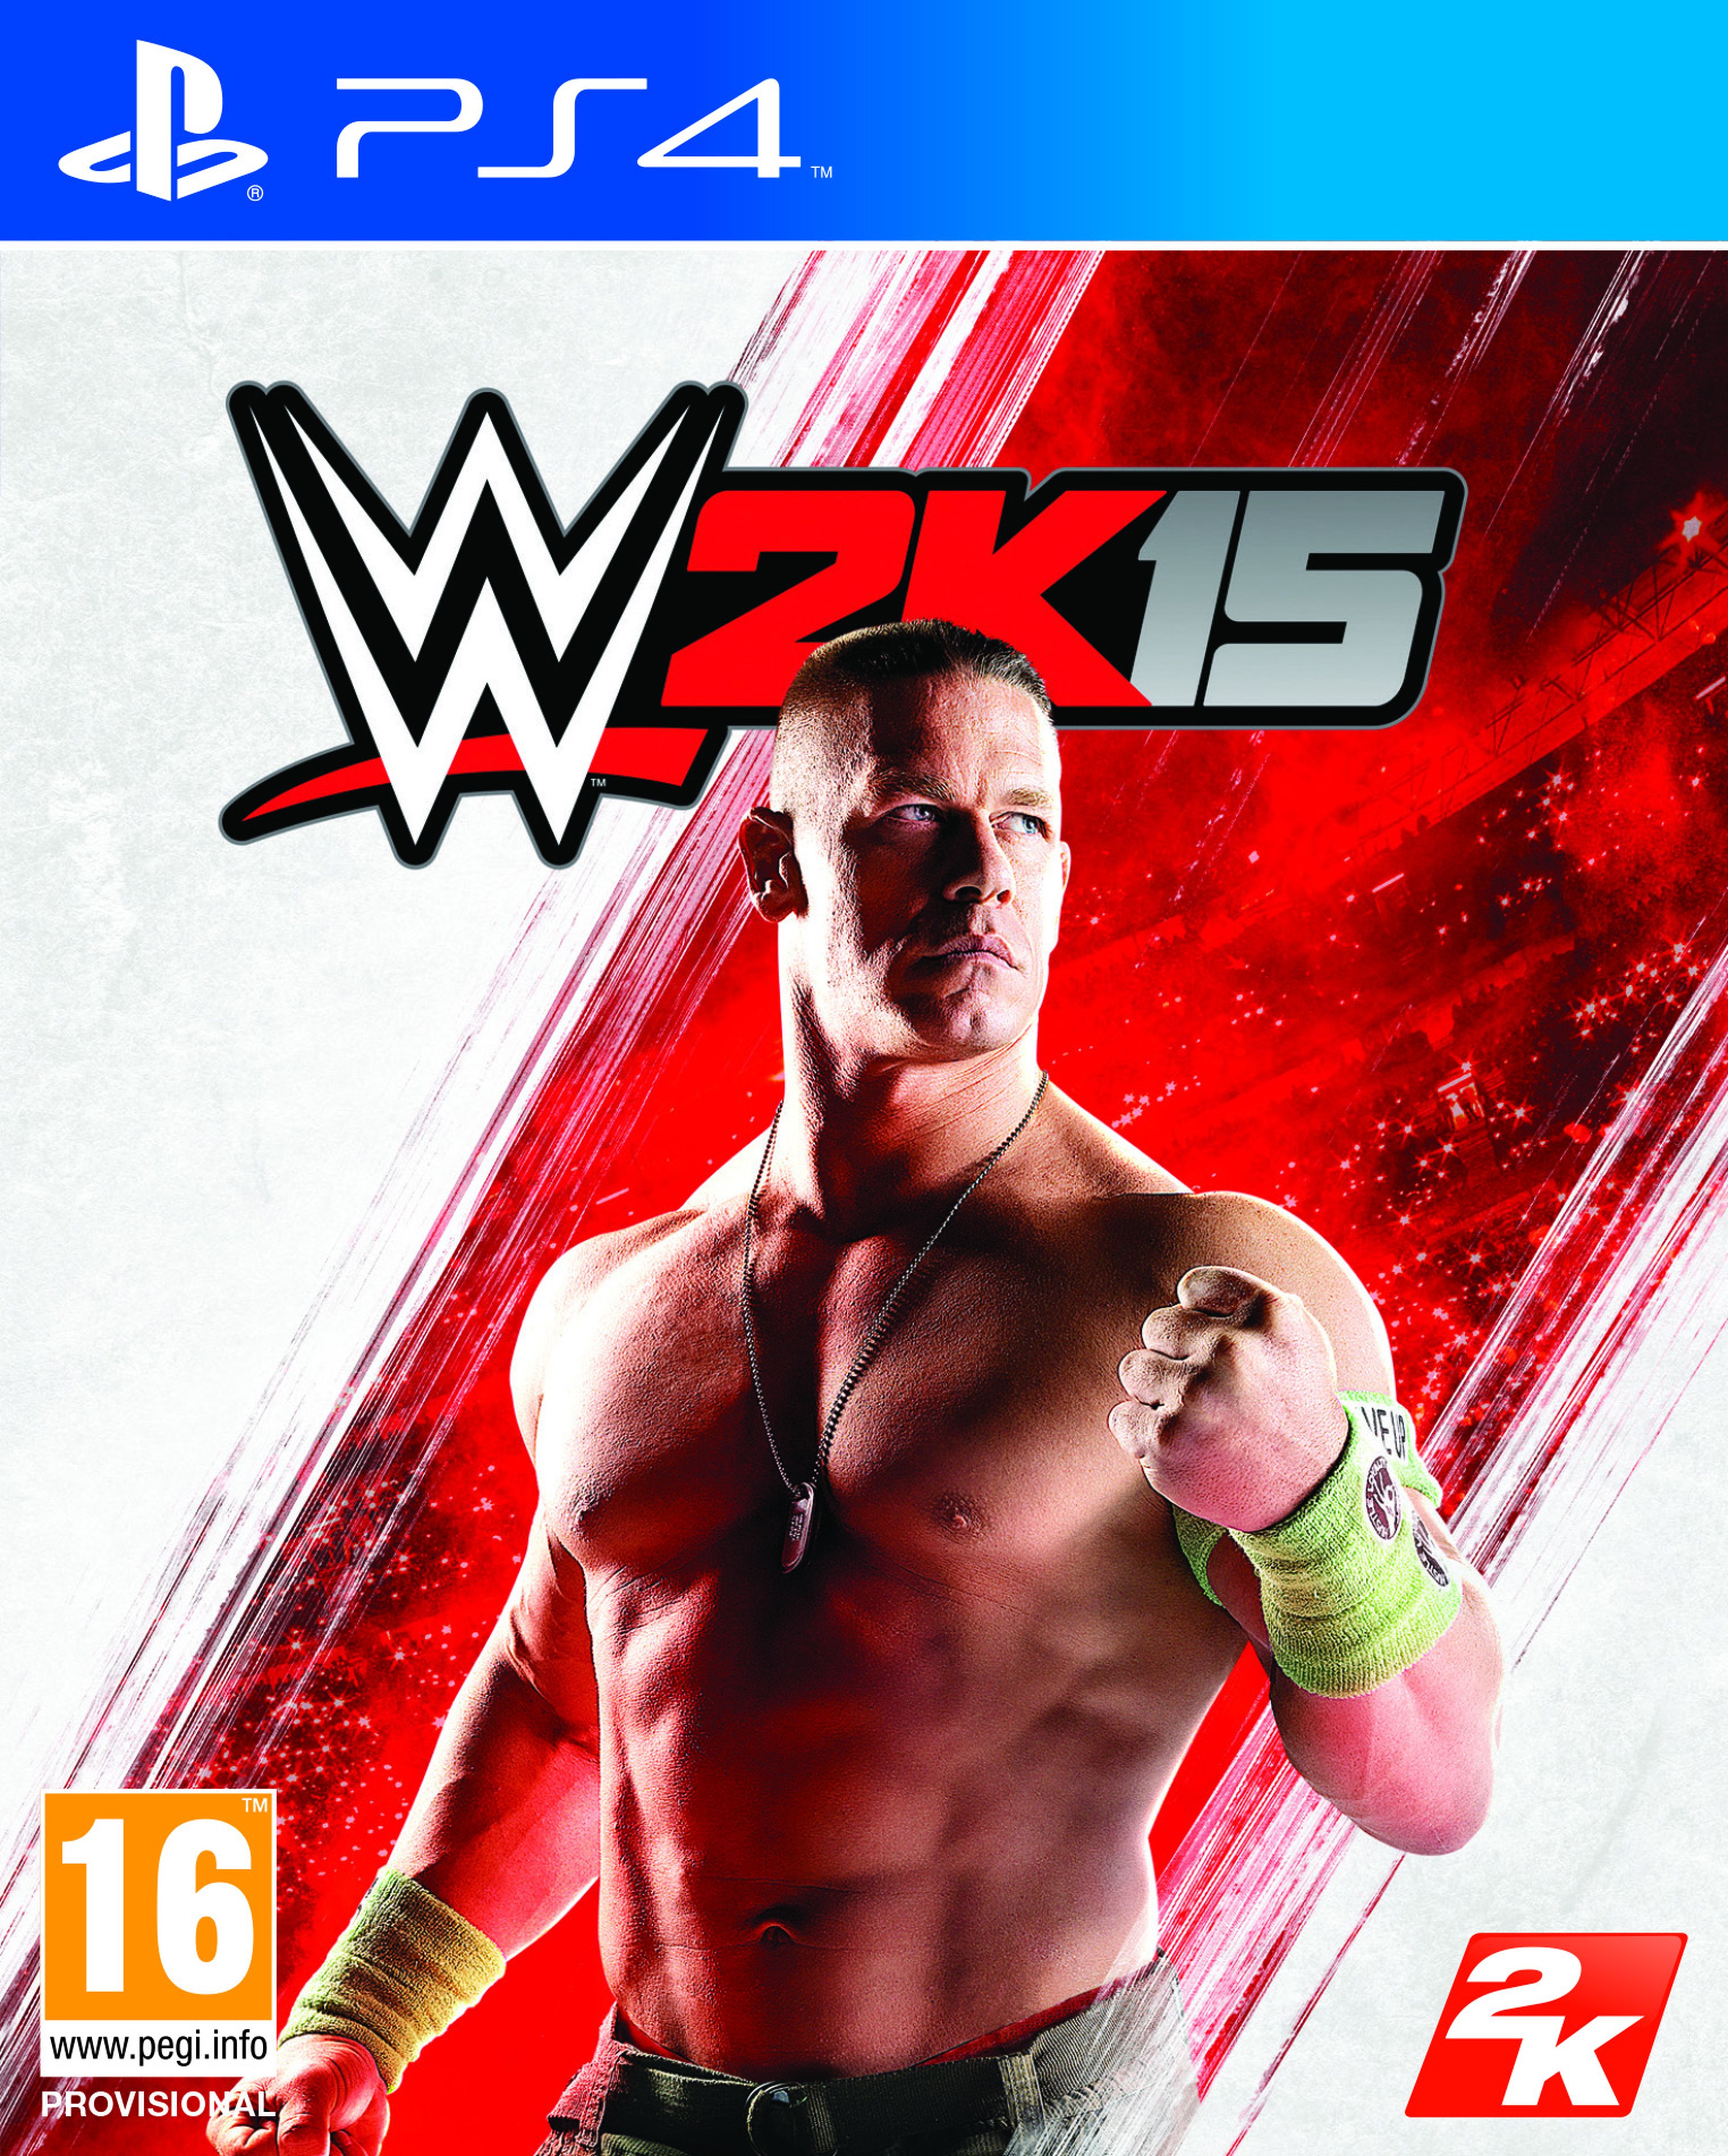 John Cena protagoniza la portada de WWE 2k15